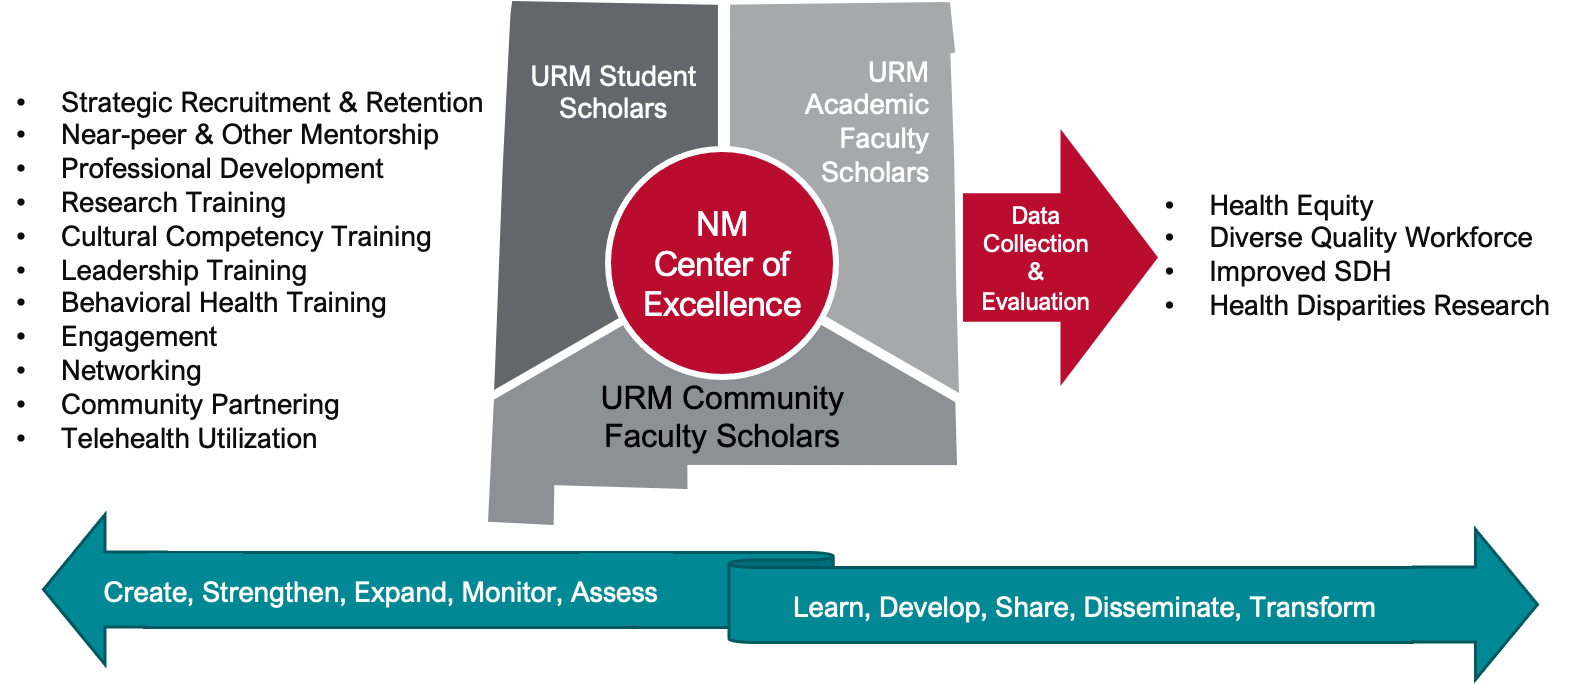 диаграмма, показывающая функции и взаимоотношения URM и Центра передового опыта Нью-Мексико